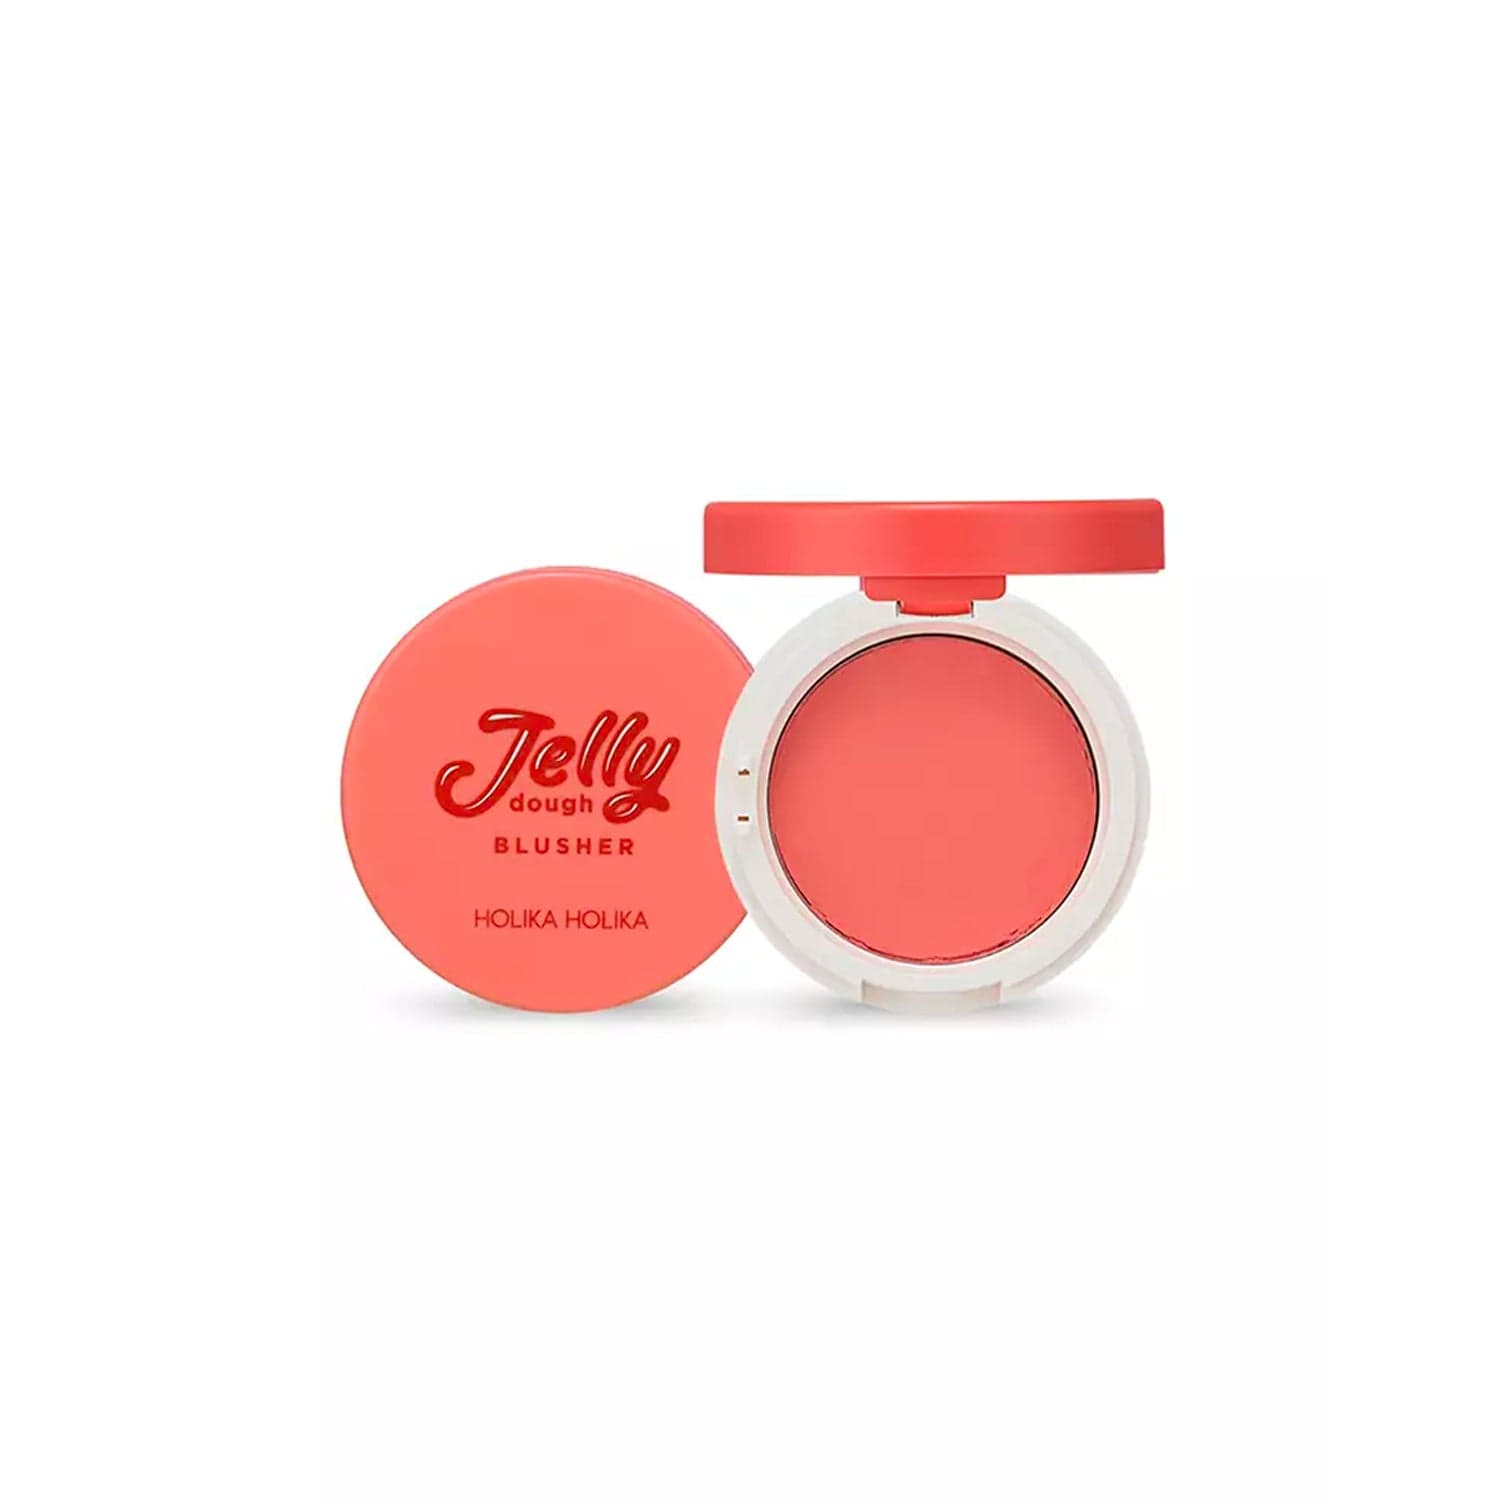 Holika Holika - Blush "Jelly dough Blusher" - Holika Holika - Ethni Beauty Market